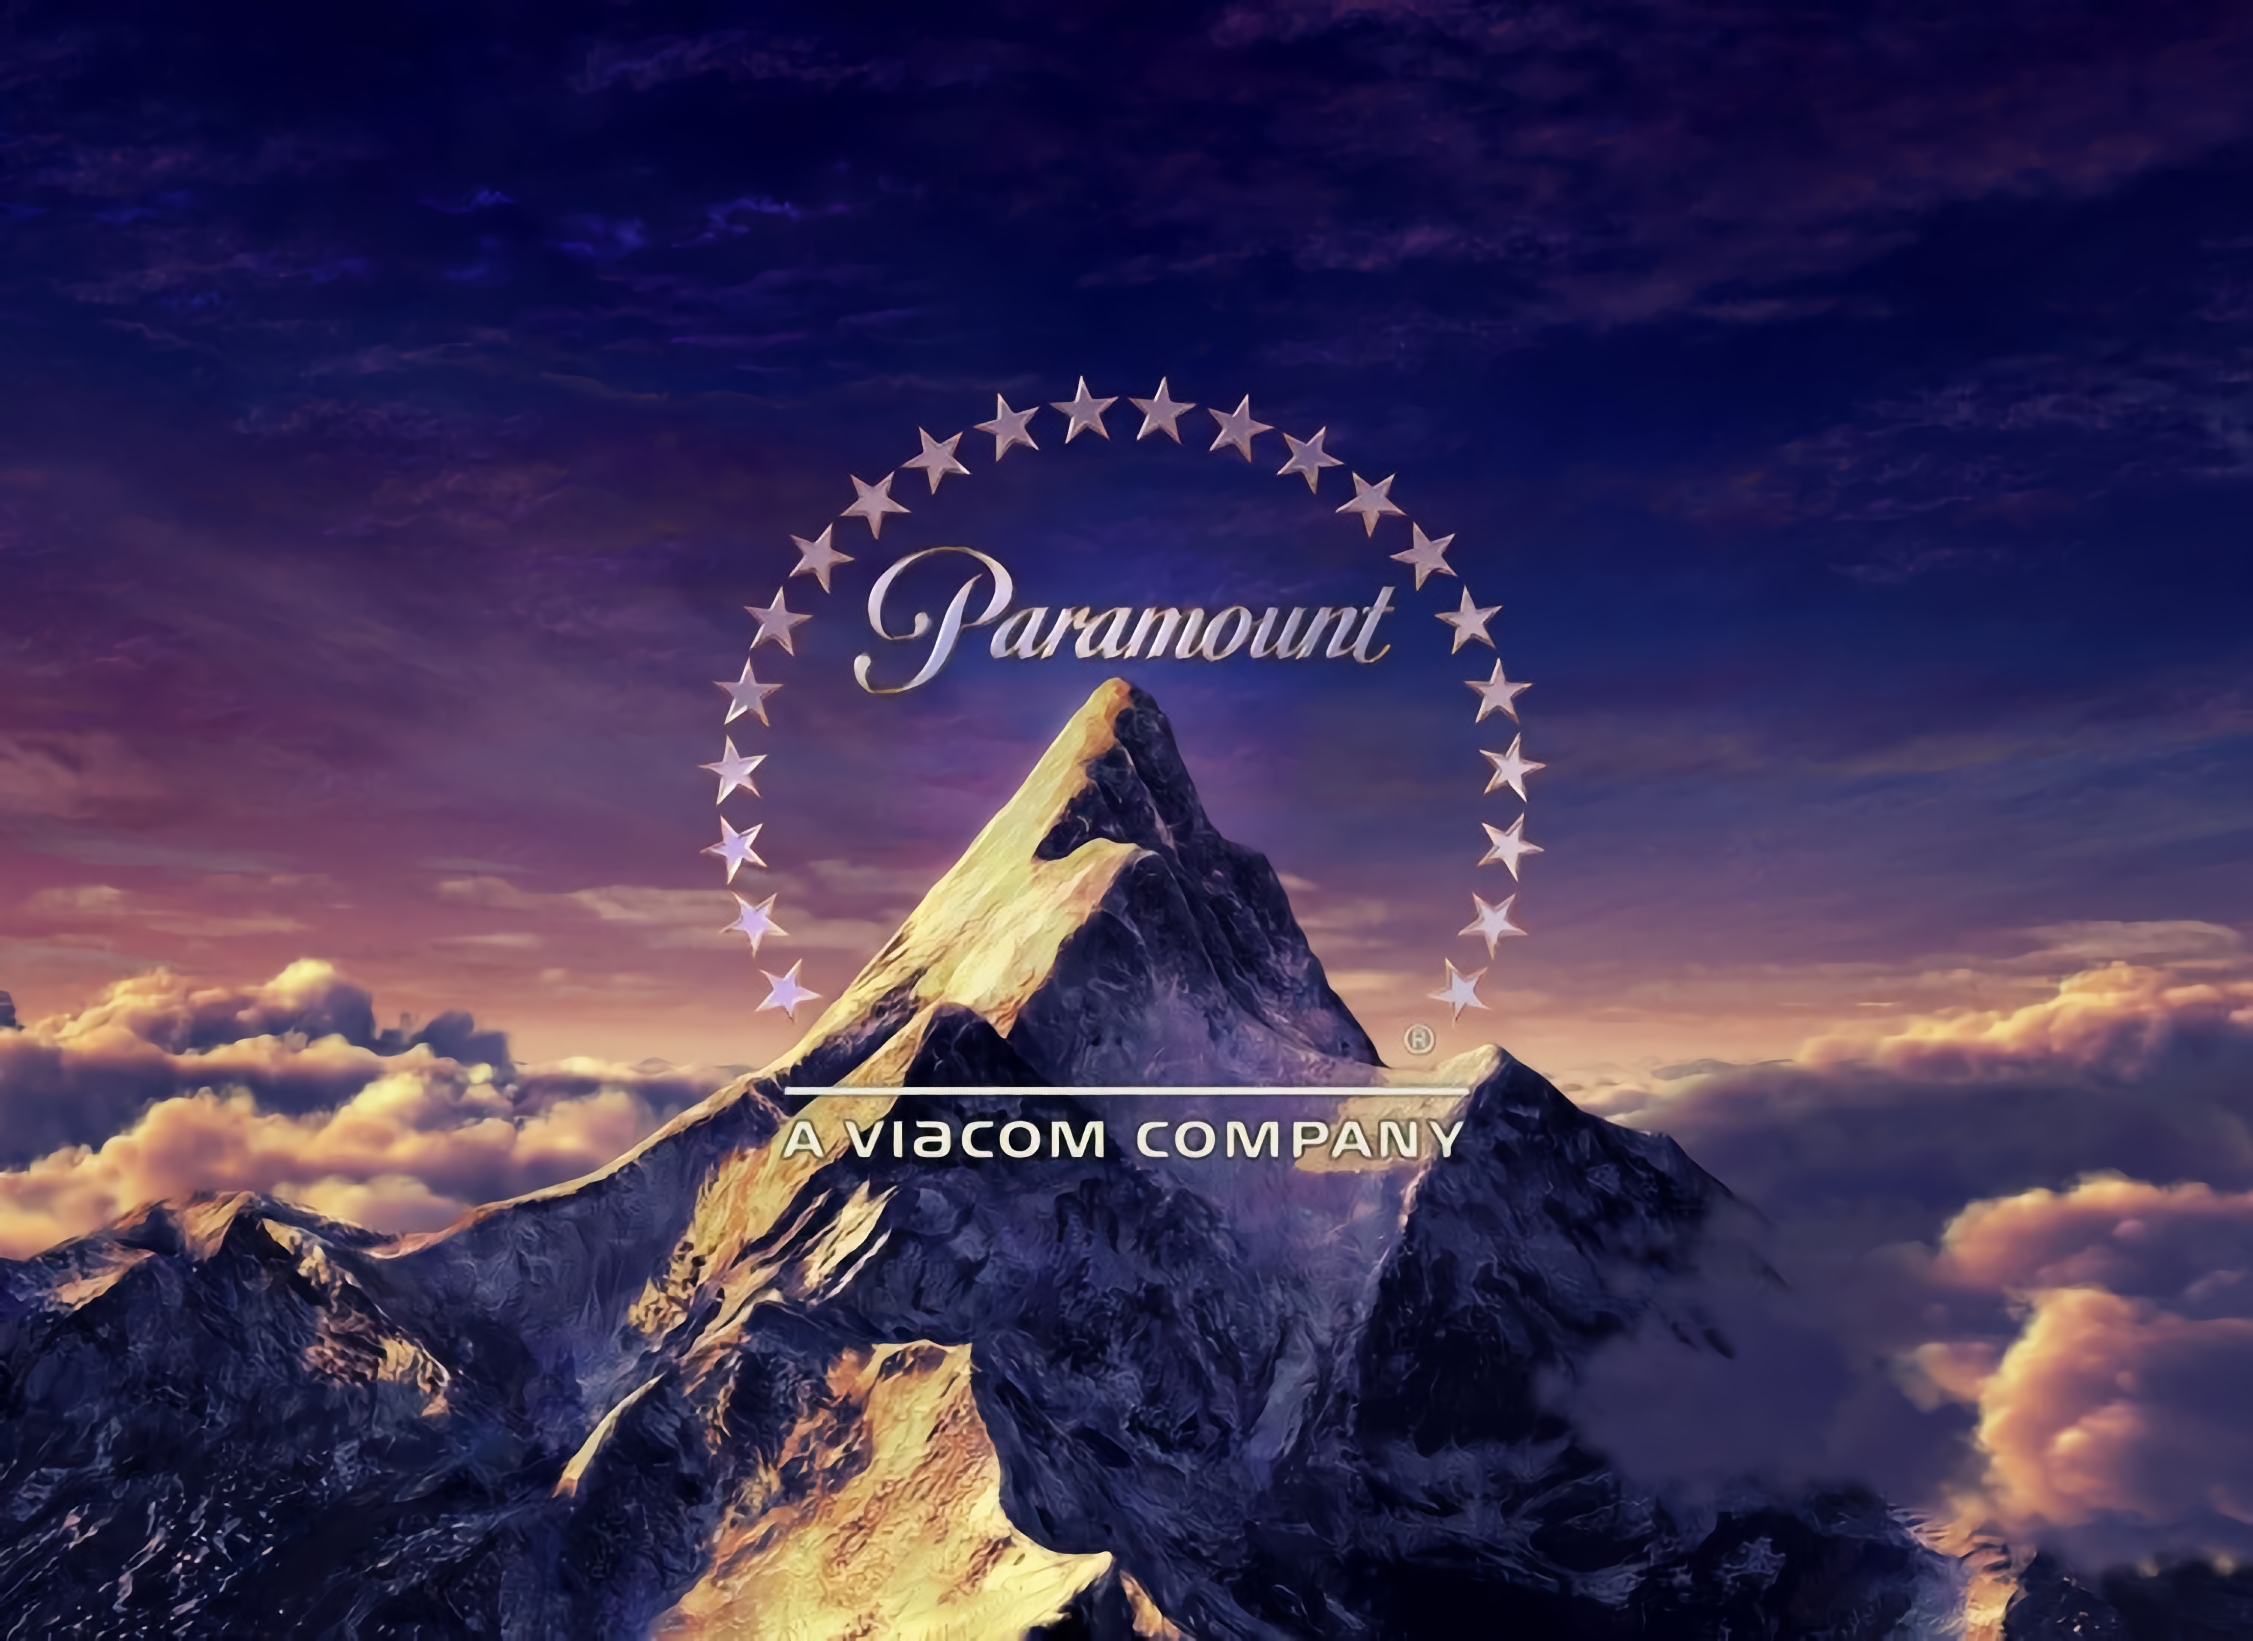 Studio filmowe Paramount przestaje działać w Rosji